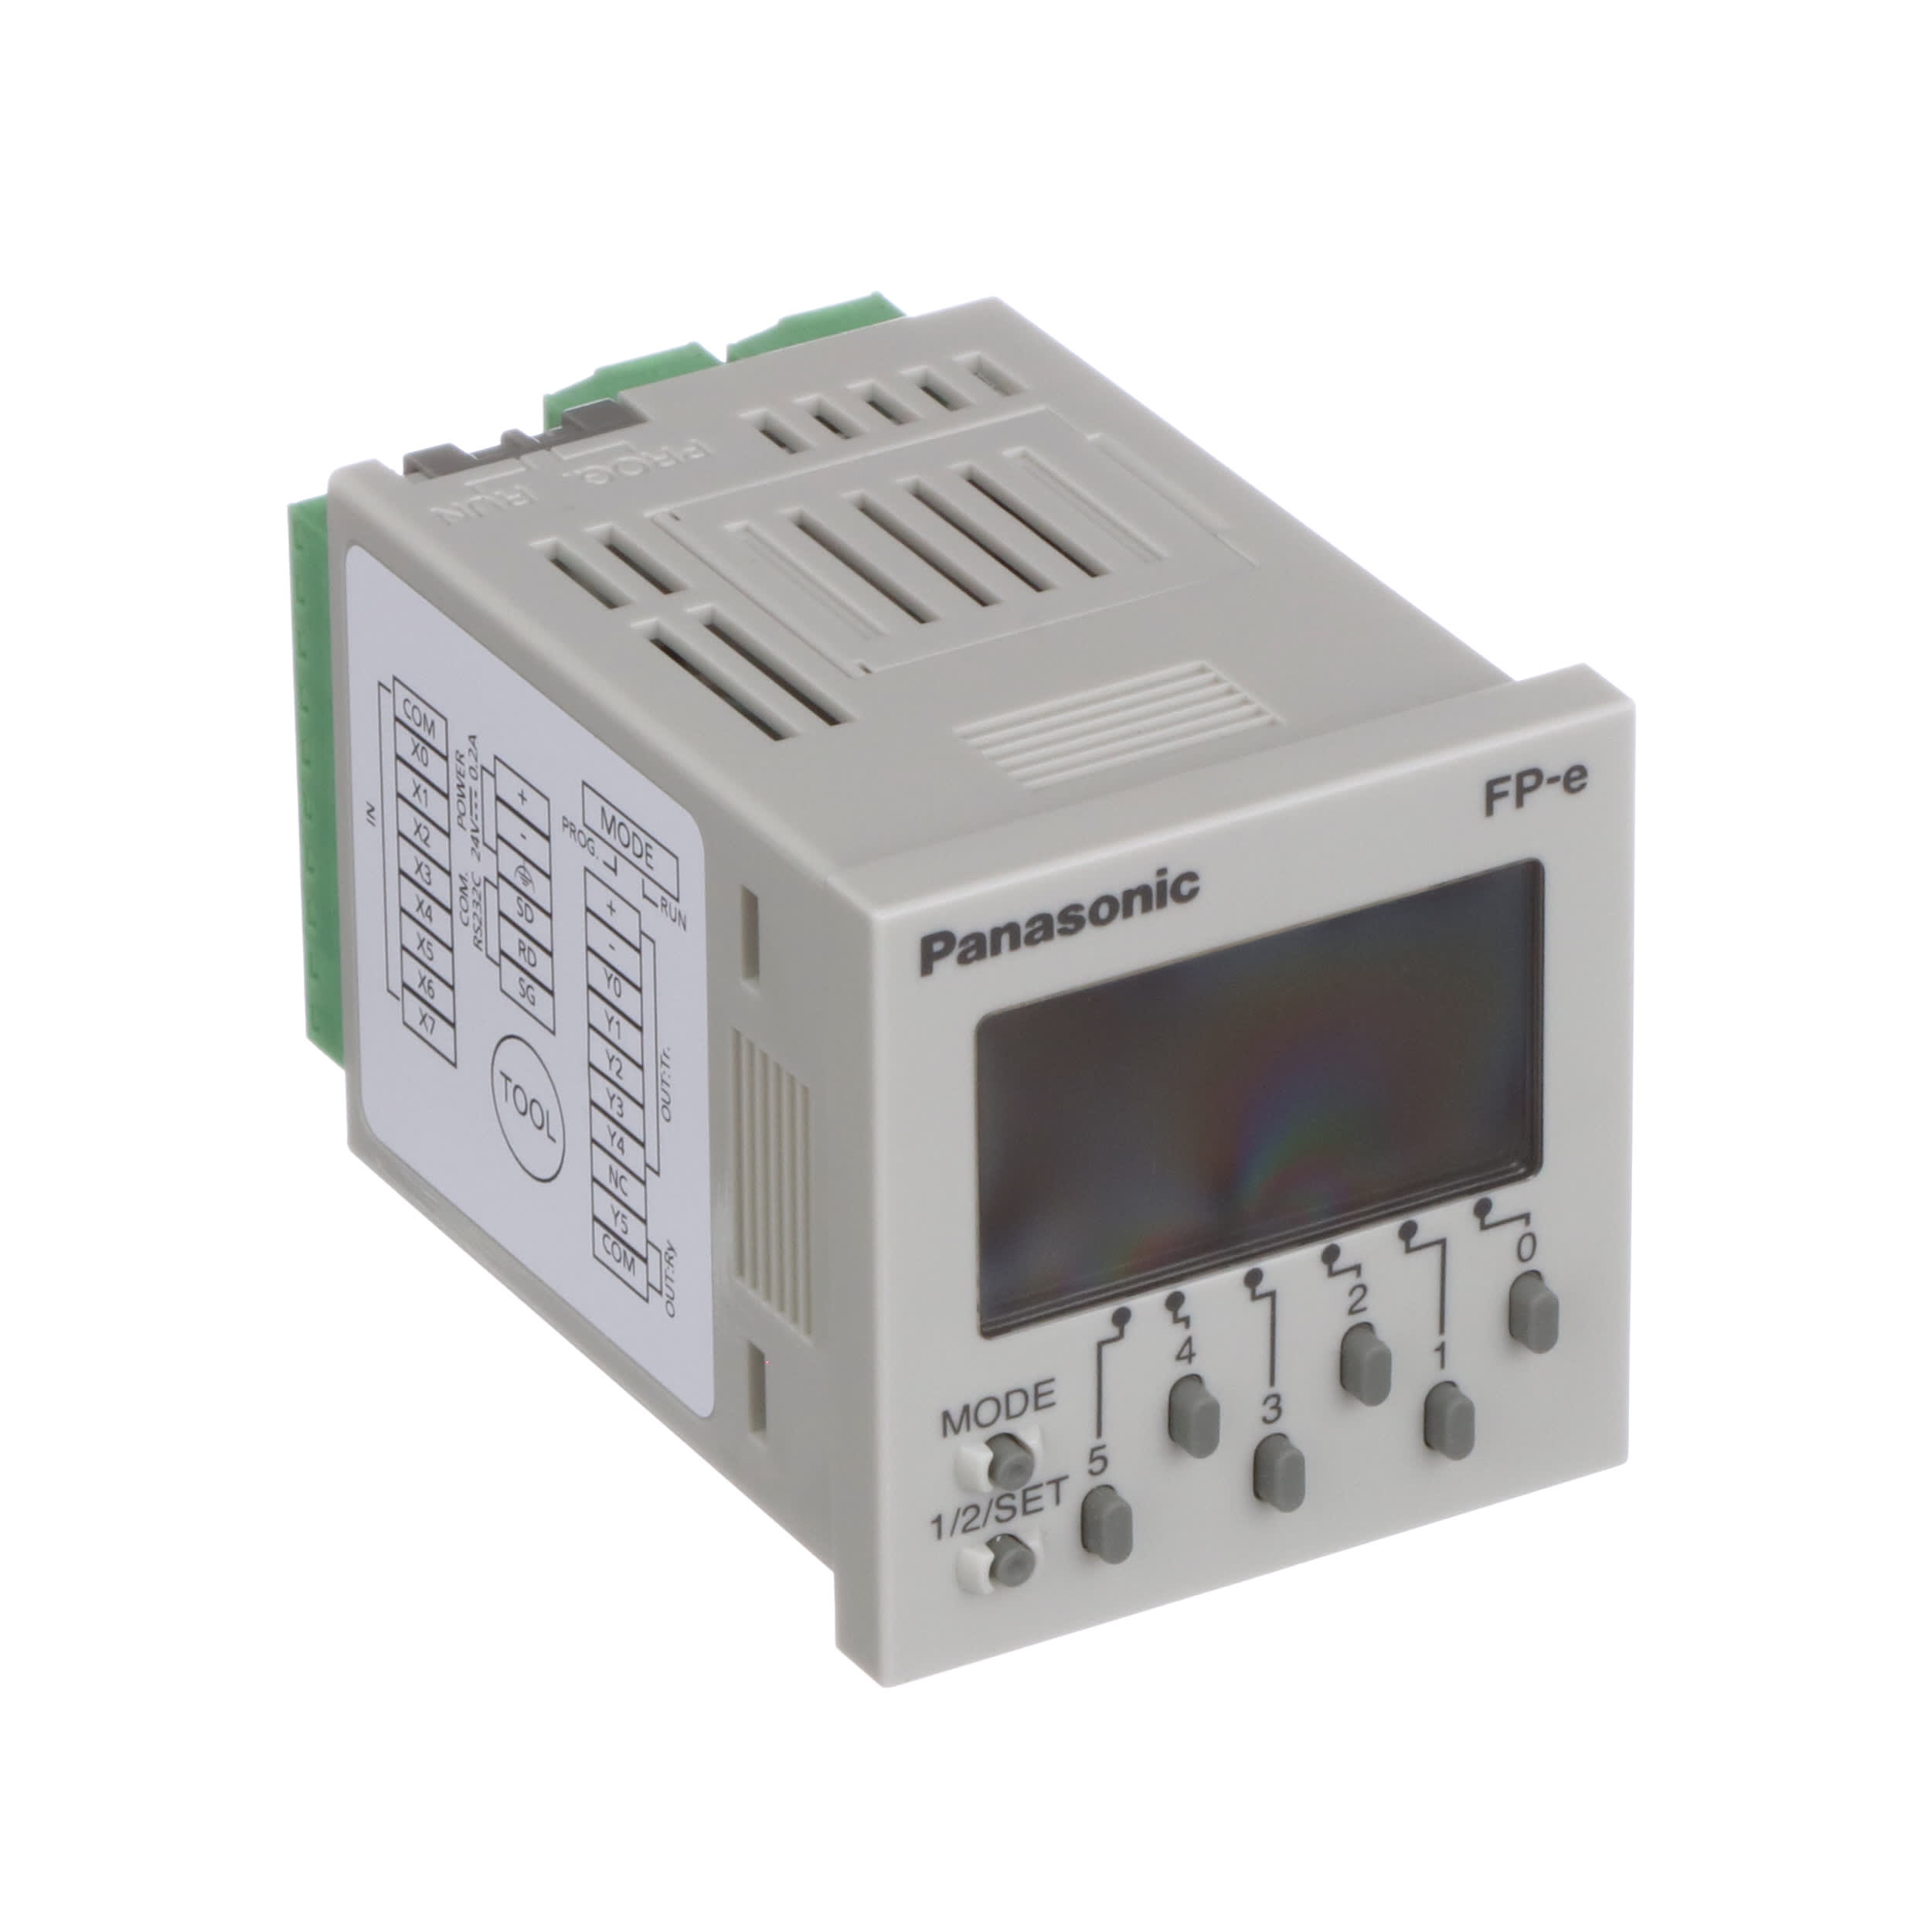 FP-e Control Unit as photo sn:random Promotion Details about   Panasonic NAIS FP-E AFPE224300 